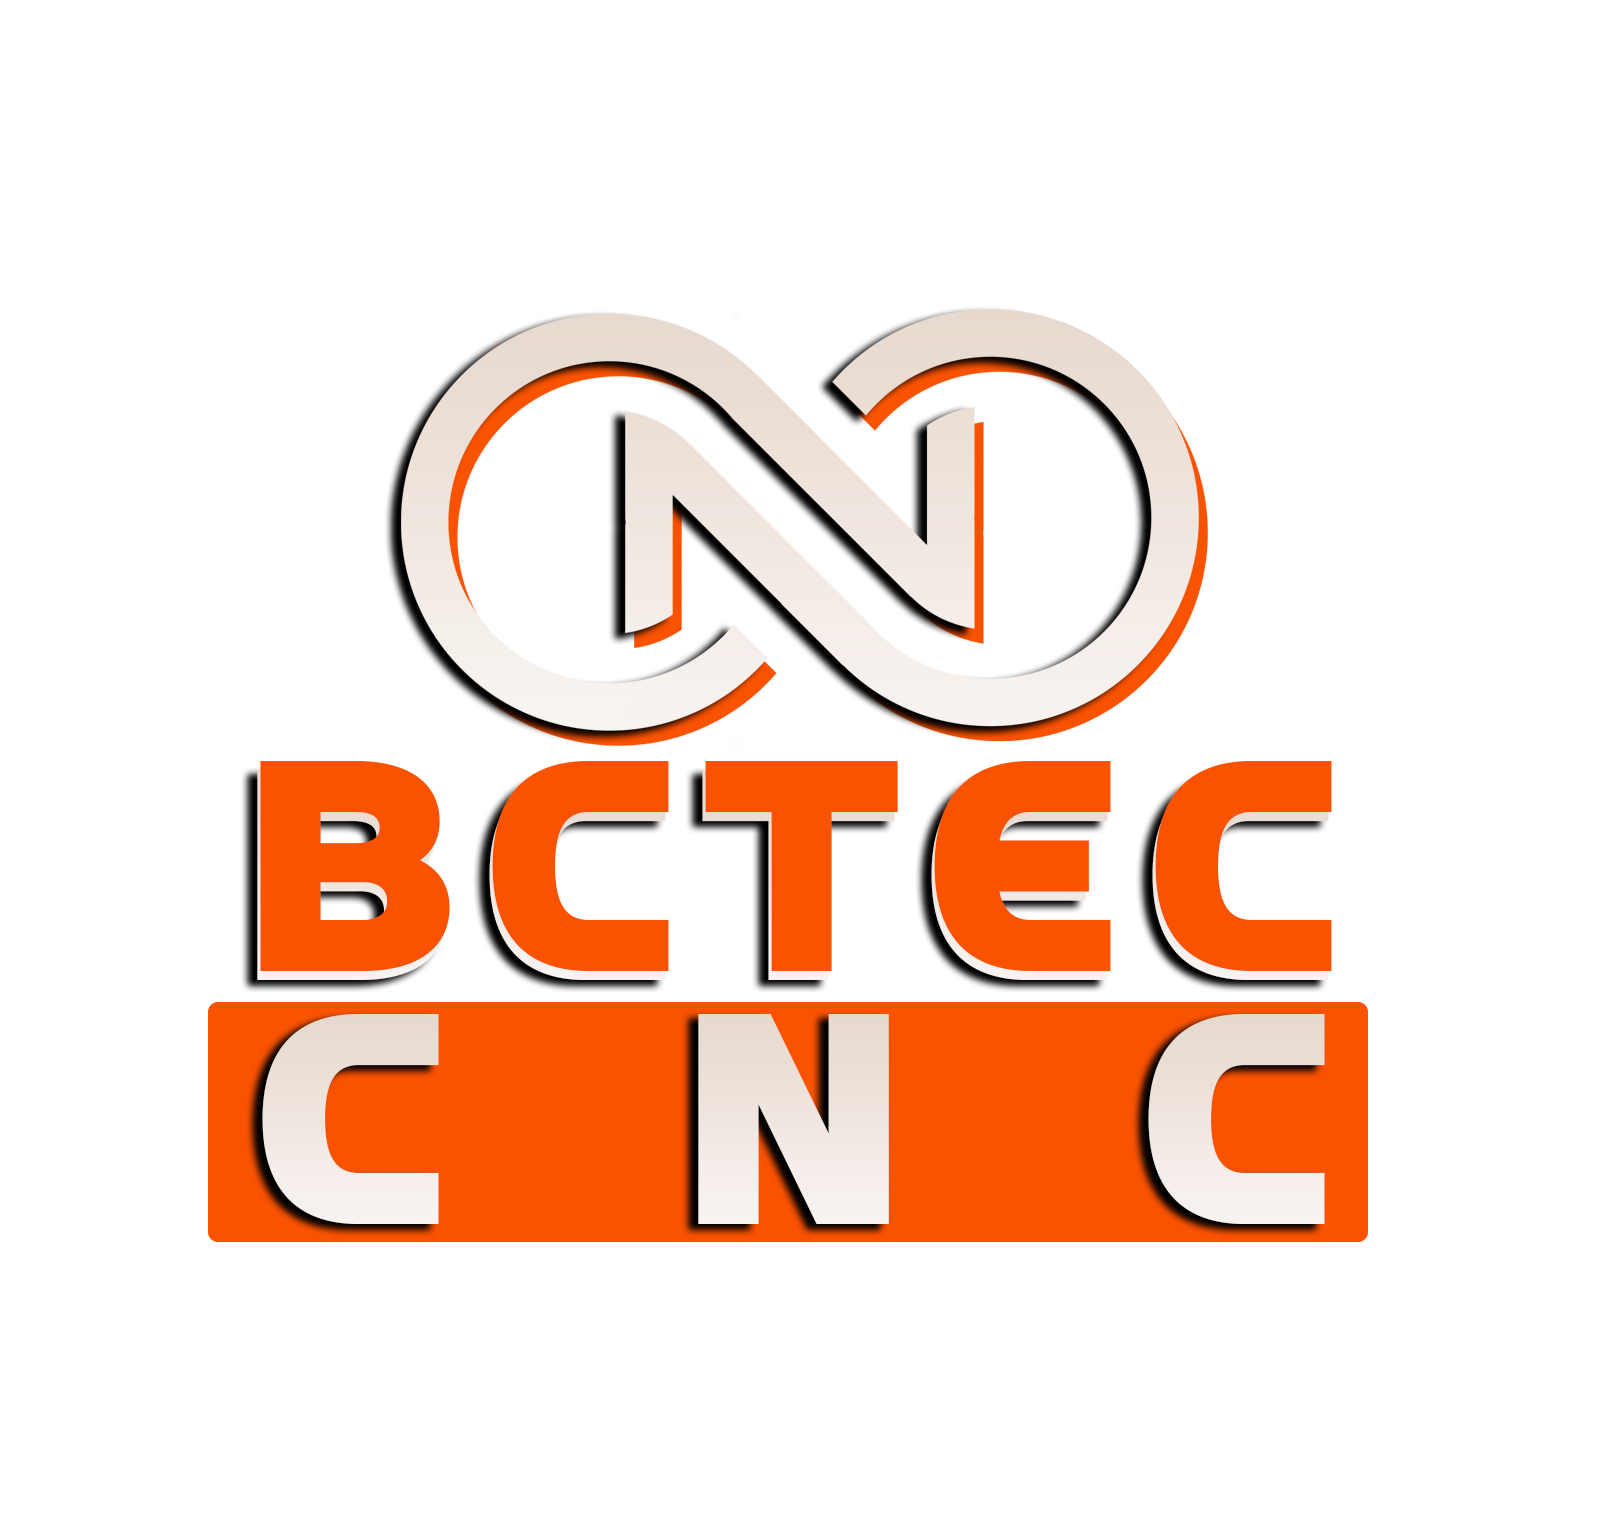 BCTECCNC